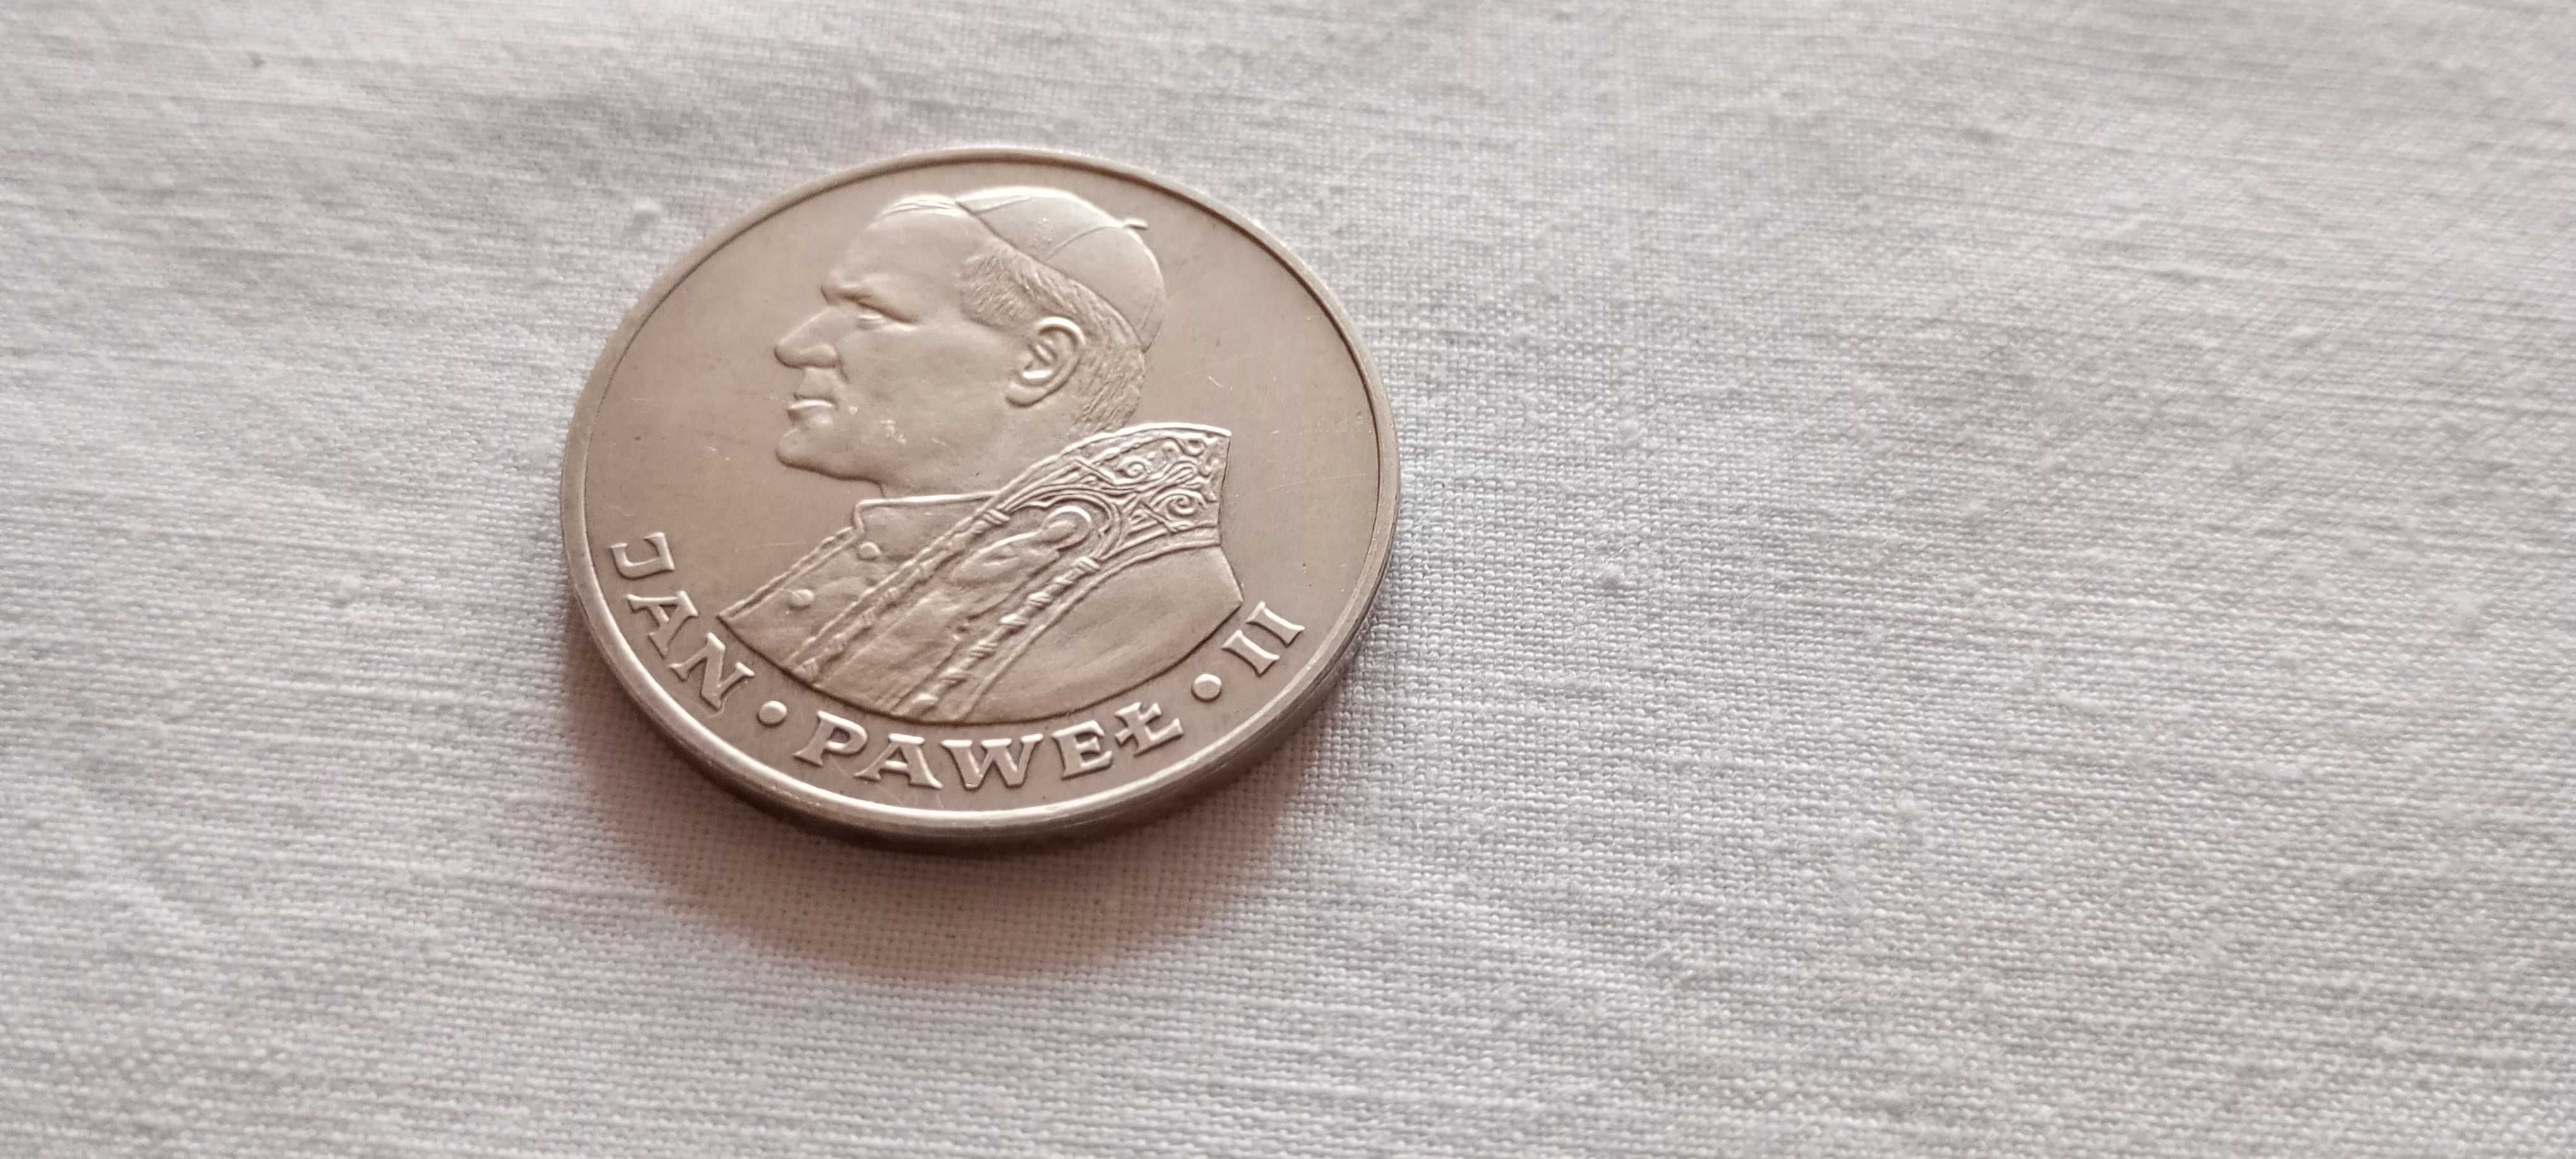 Sprzedam srebrną monetę 1000 zł z Janem Pawłem II  1982 r.